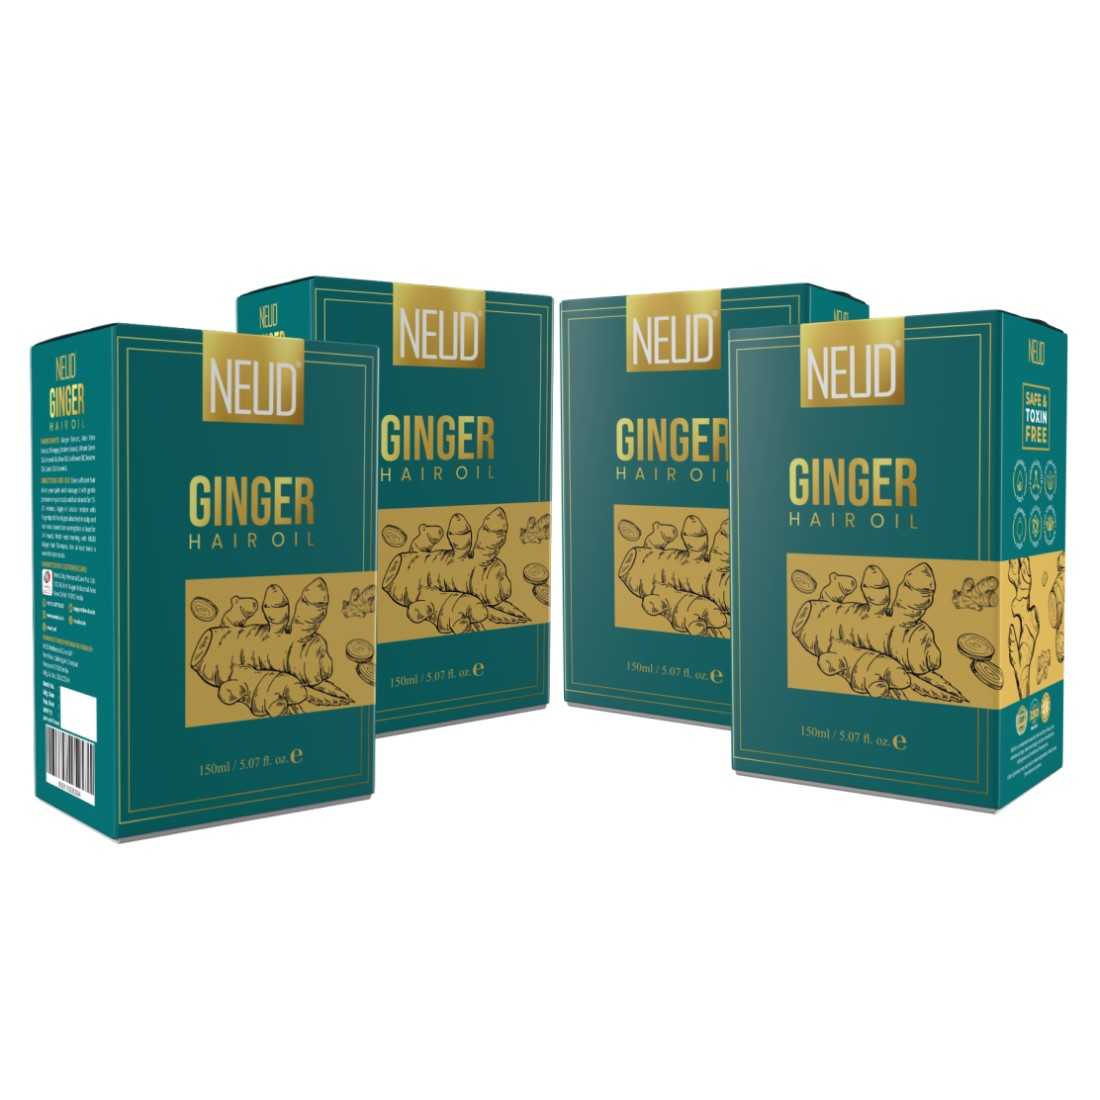 NEUD Ginger Hair Oil for Men & Women - 150 ml